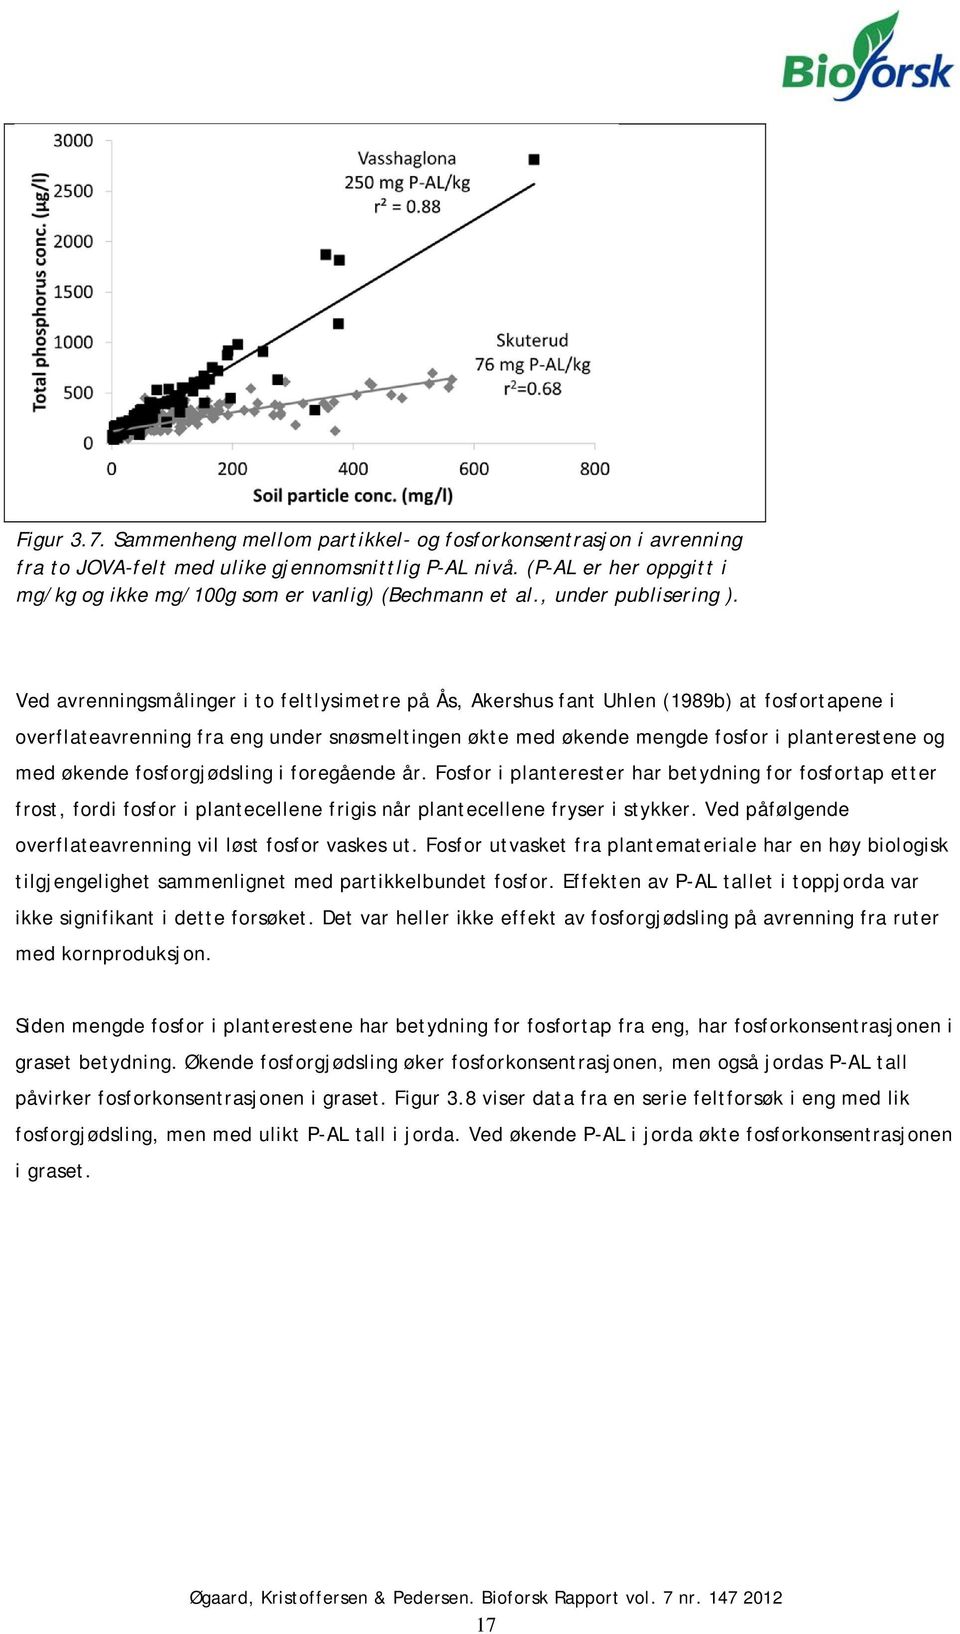 Ved avrenningsmålinger i to feltlysimetre på Ås, Akershus fant Uhlen (1989b) at fosfortapene i overflateavrenning fra eng under snøsmeltingen økte med økende mengde fosfor i planterestene og med